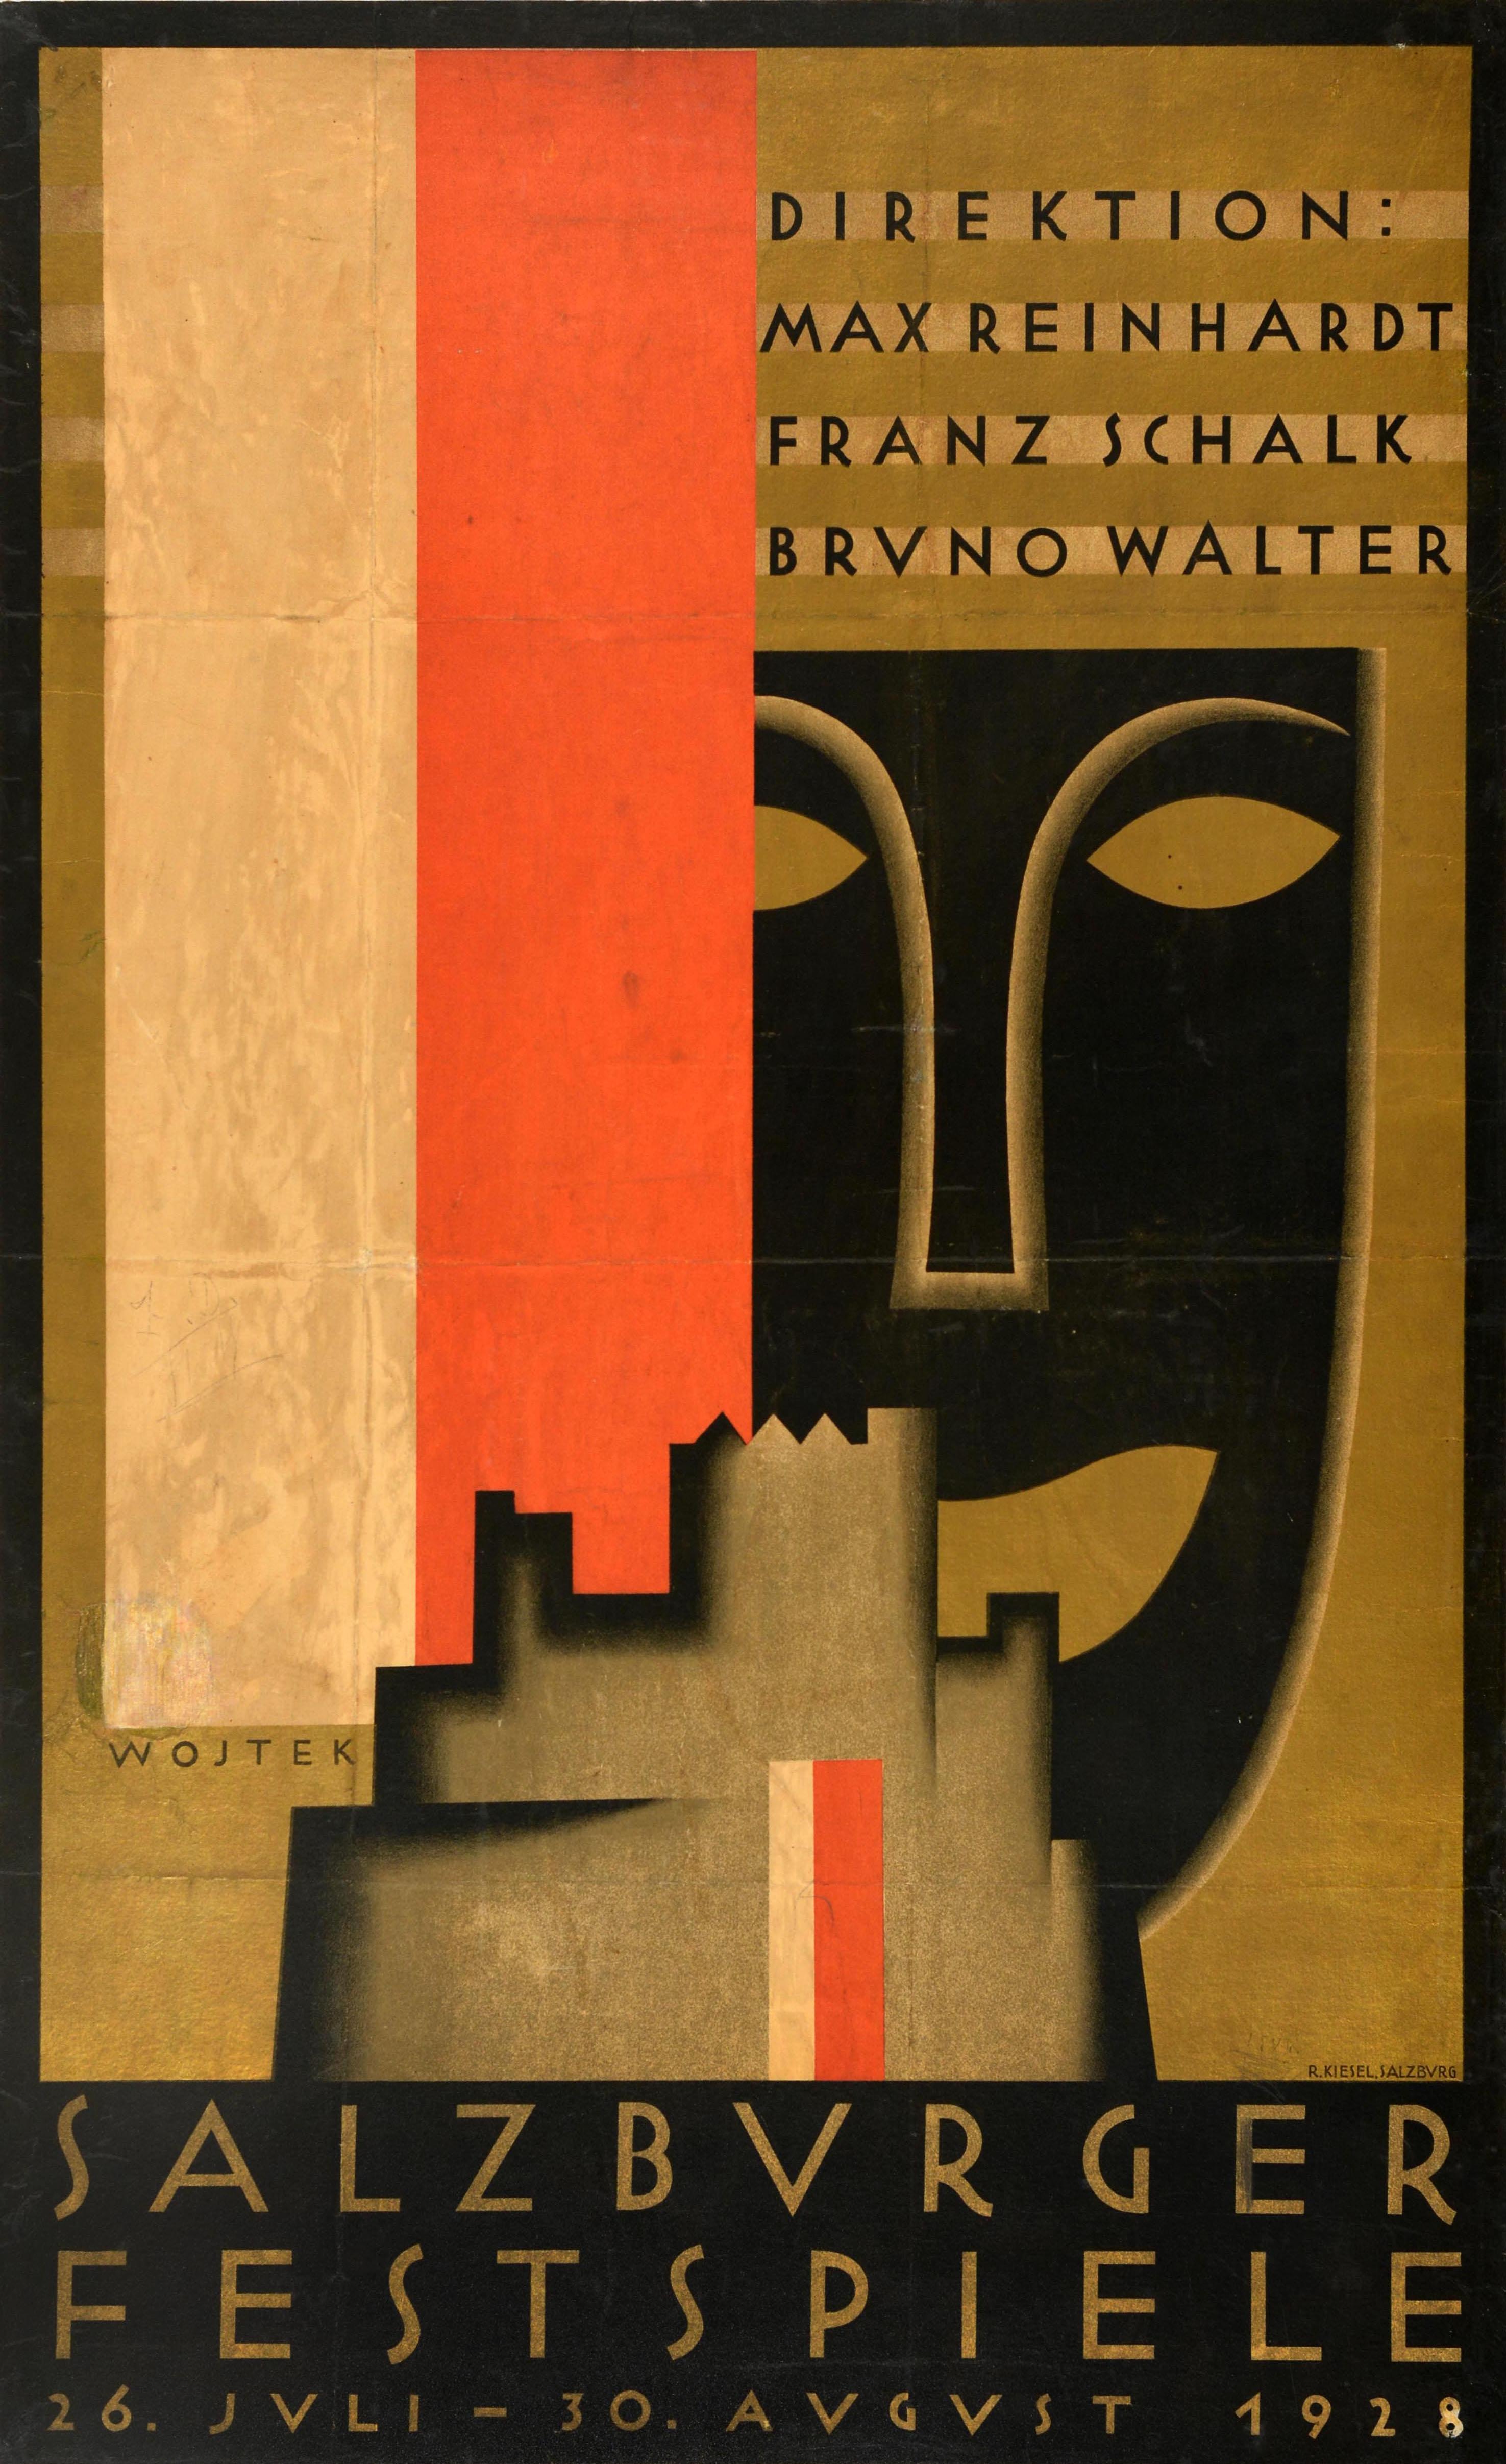 Unknown Print – Original-Vintage-Werbeplakat Salzburger Festival Salzburger Festspiele 1928